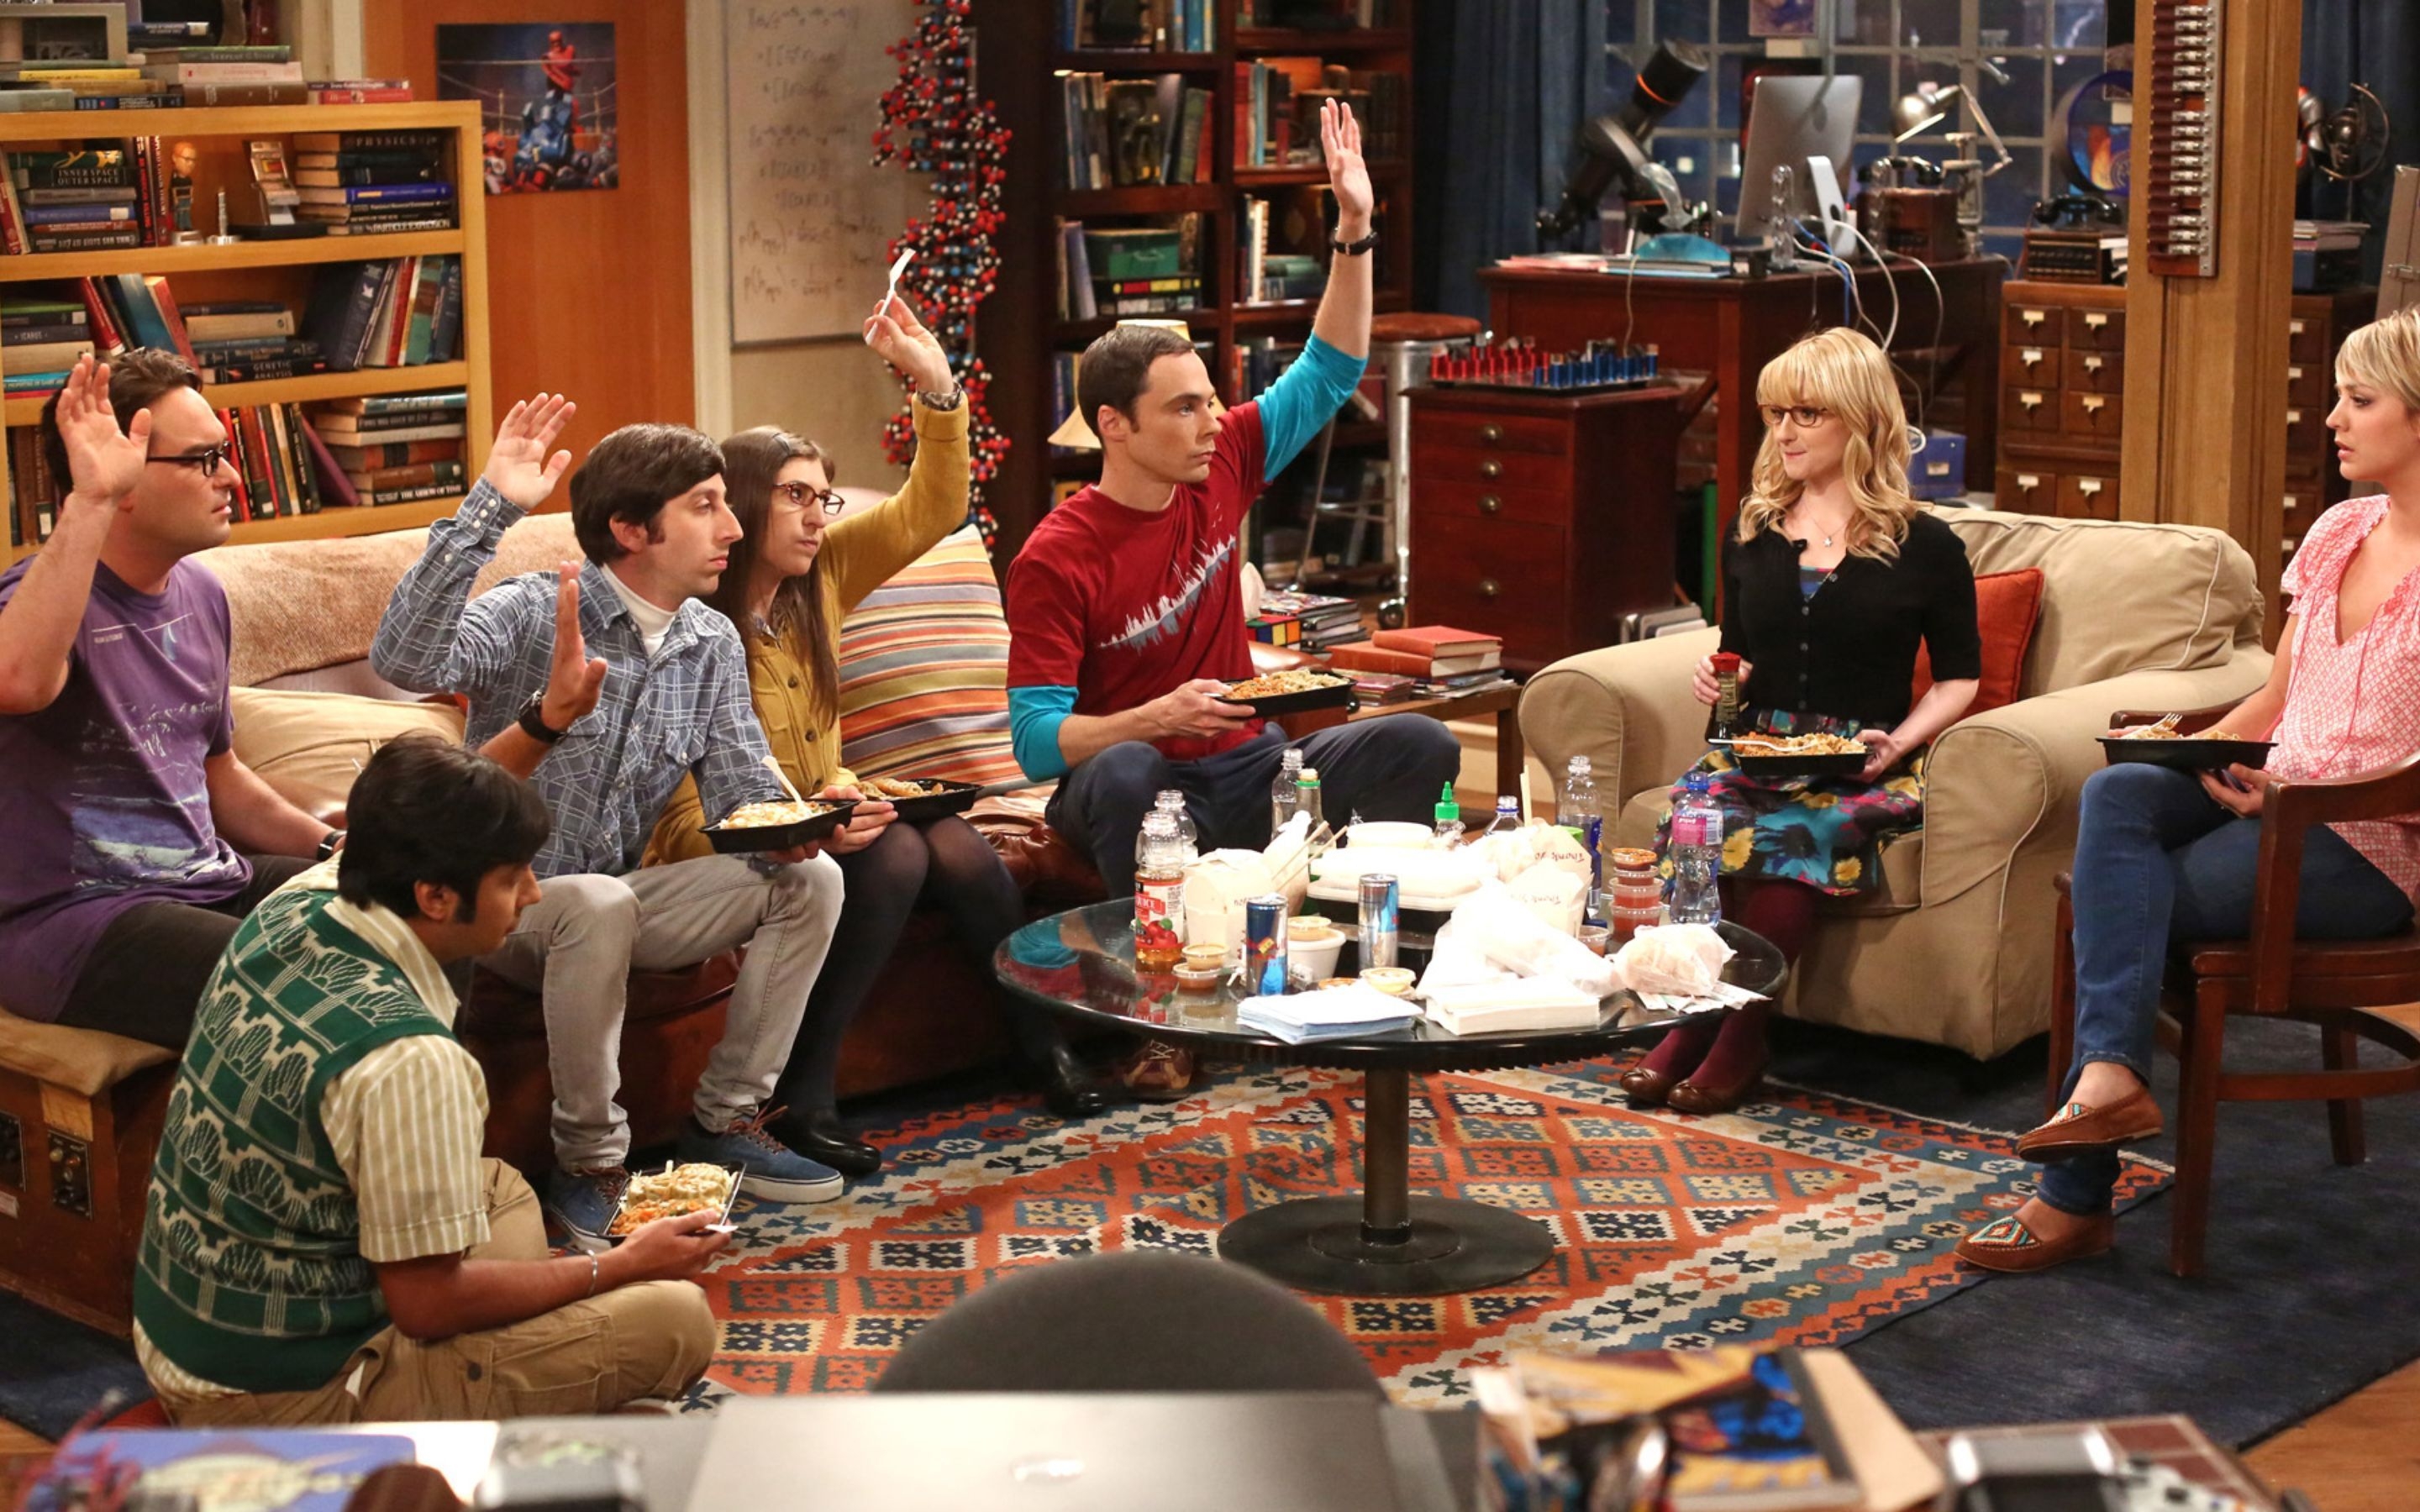 The Big Bang Theory Scene for 2880 x 1800 Retina Display resolution